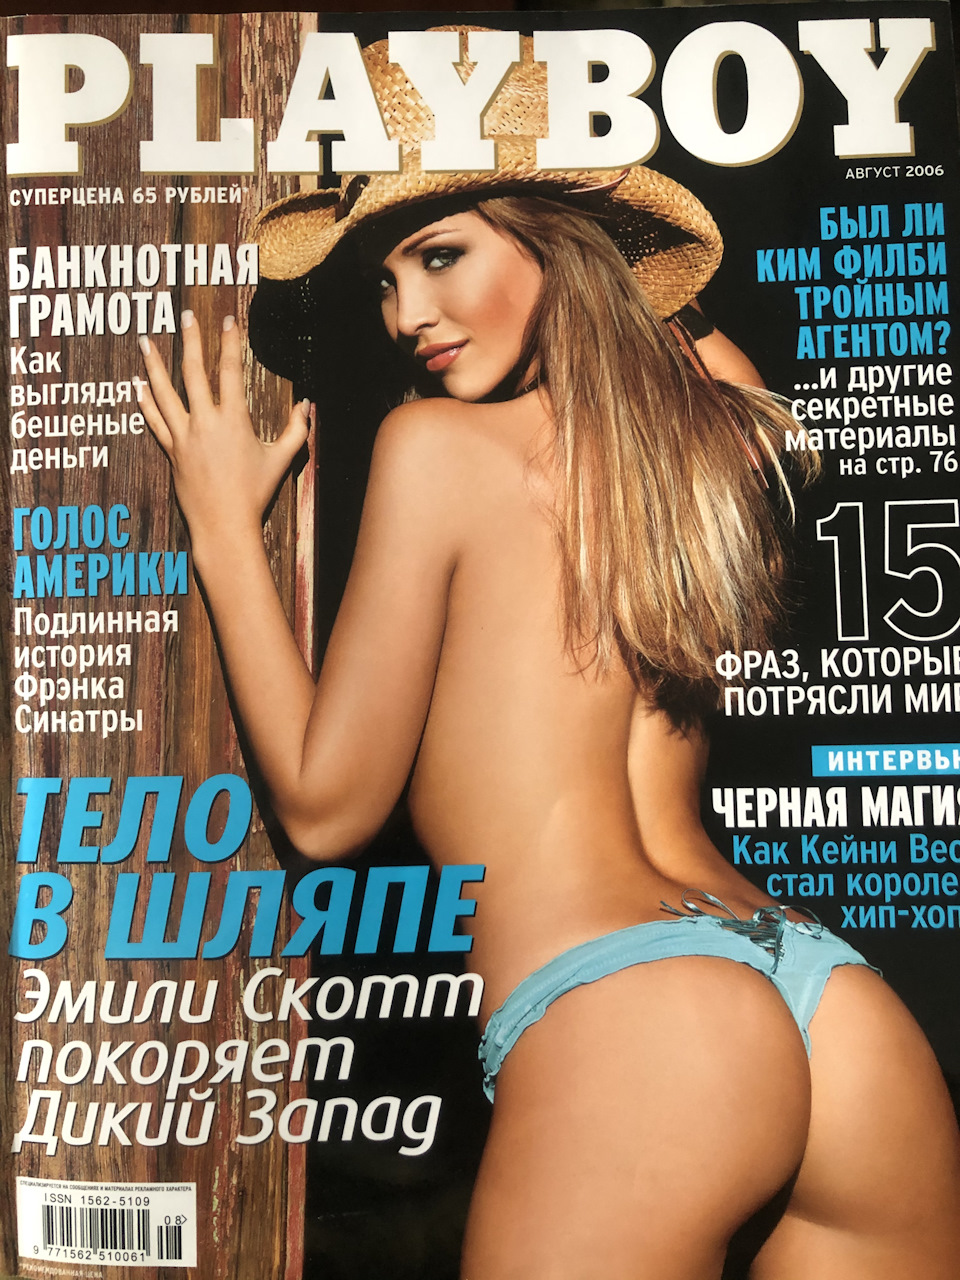 Hot playboy magazine pdf - 🧡 Смотреть Бесплатно Порно Журнал Плейбой.